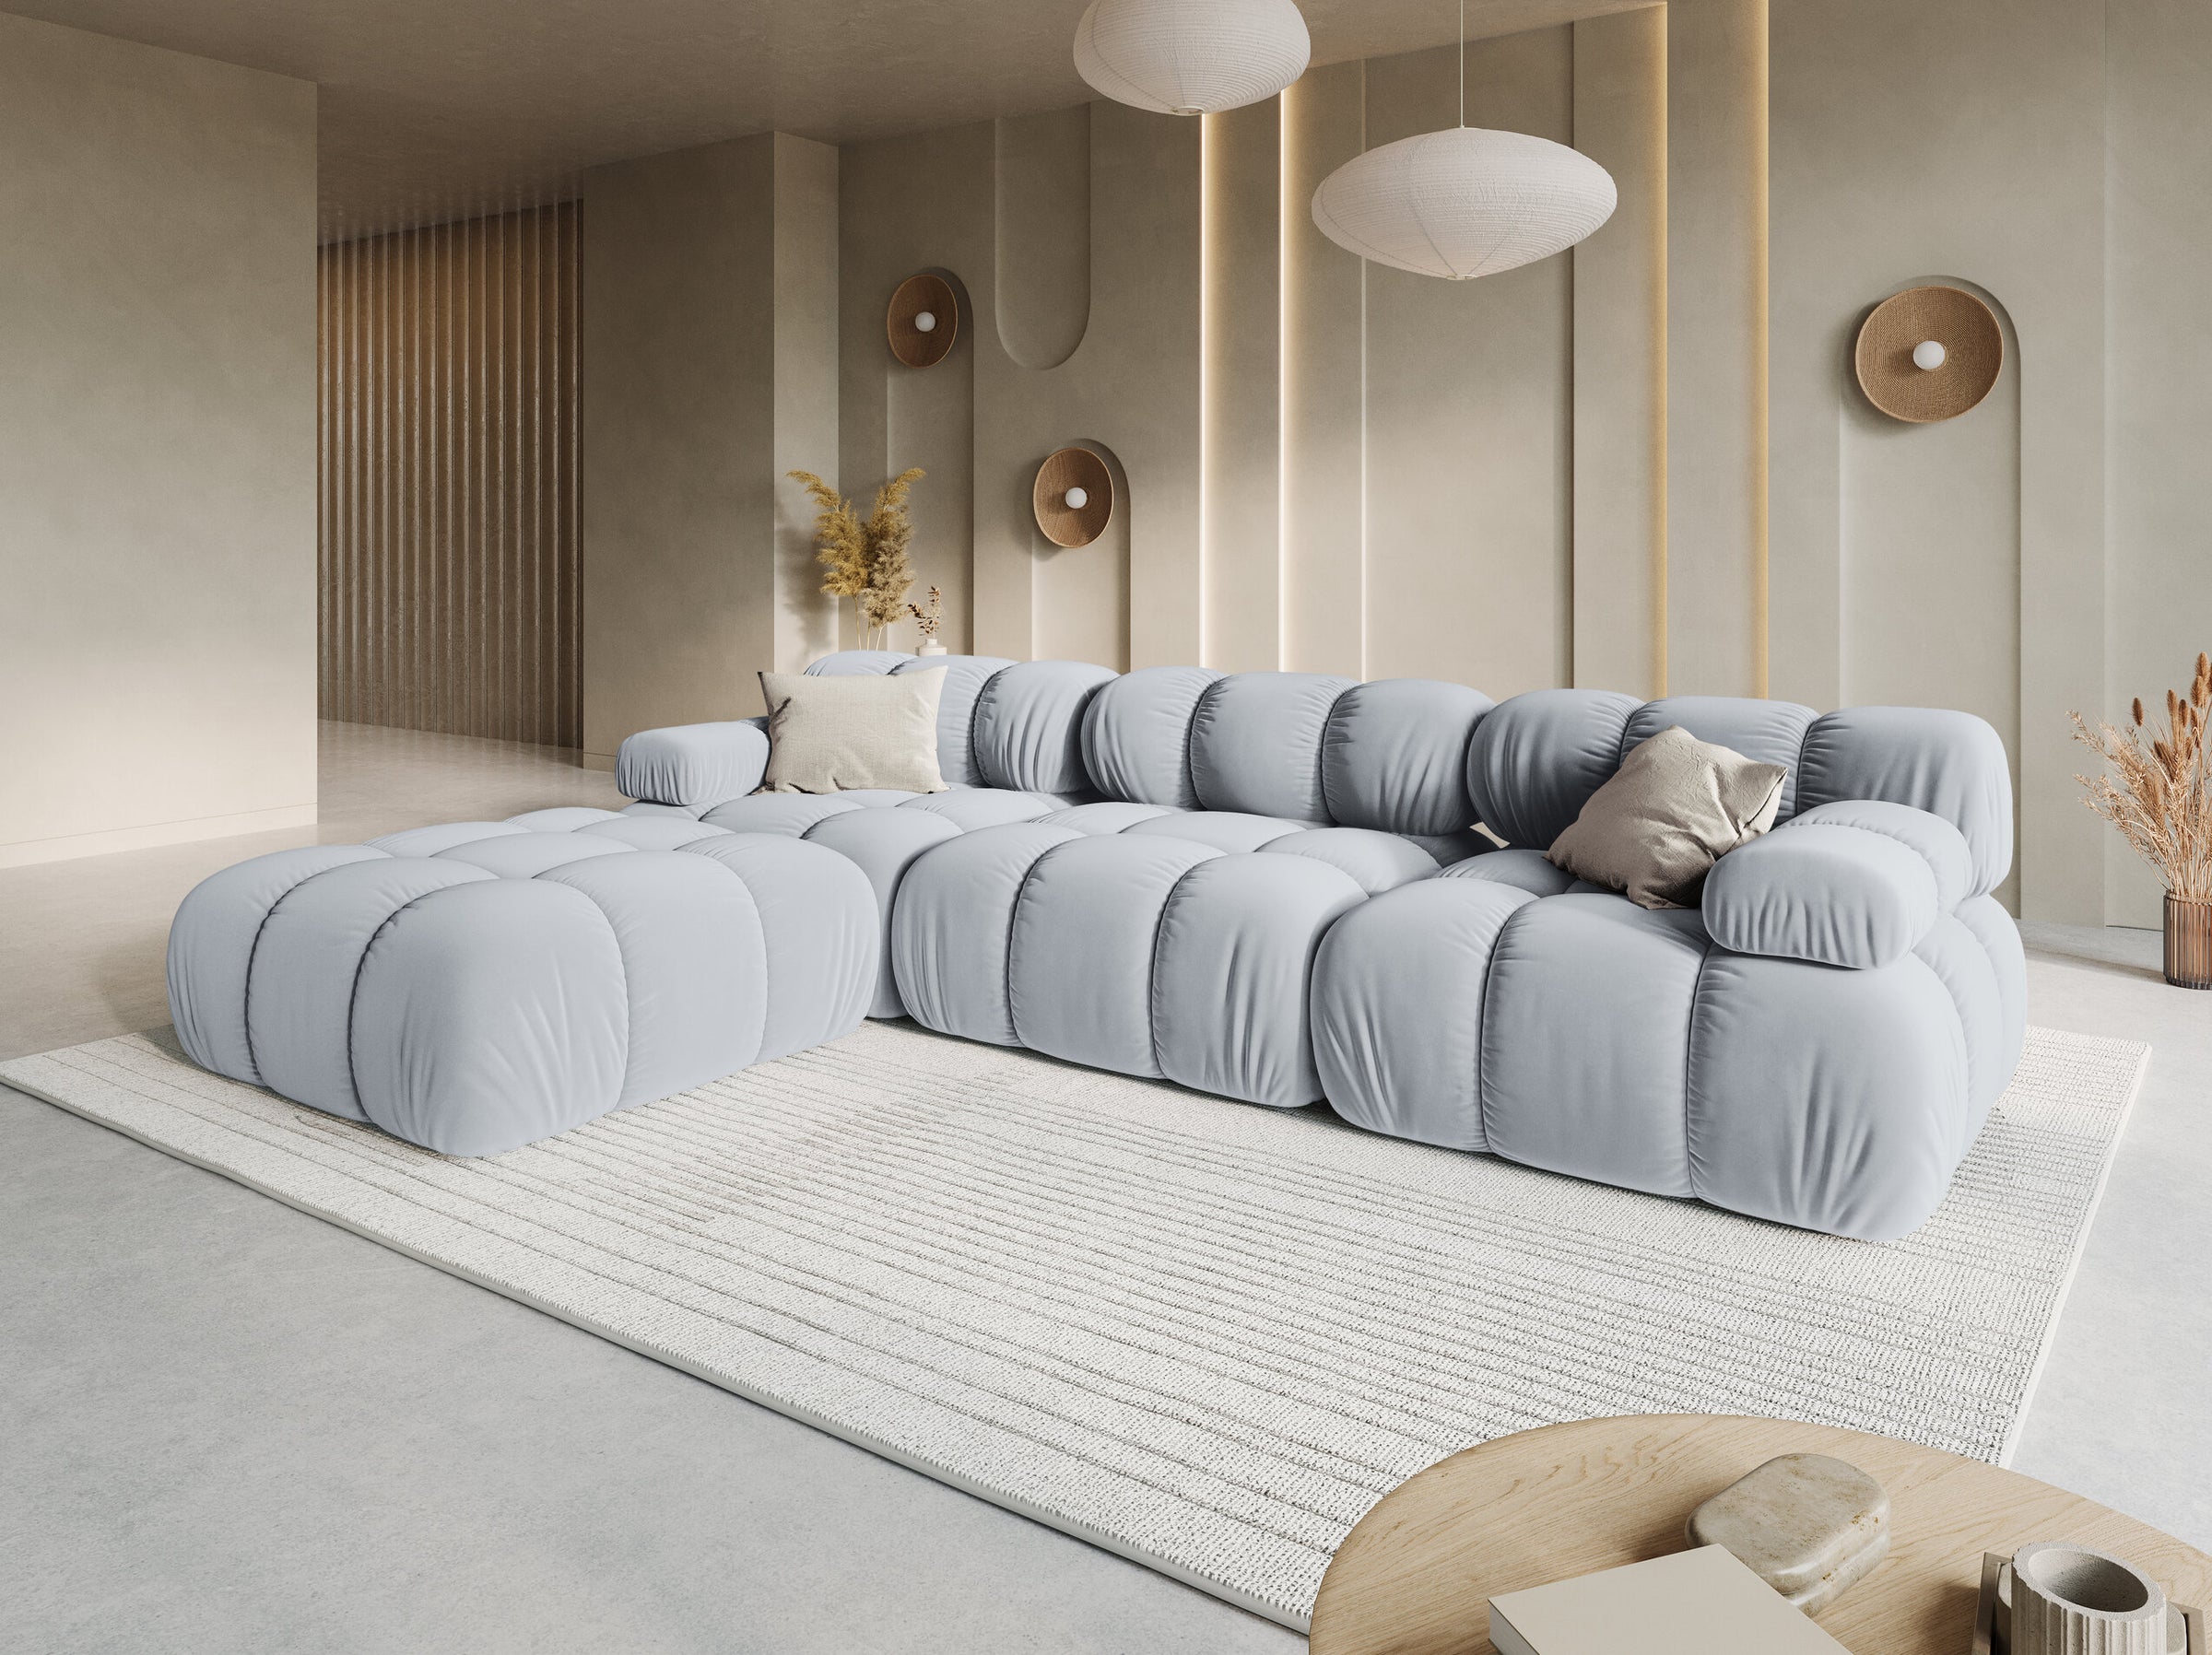 Bellis sofas velvet light blue